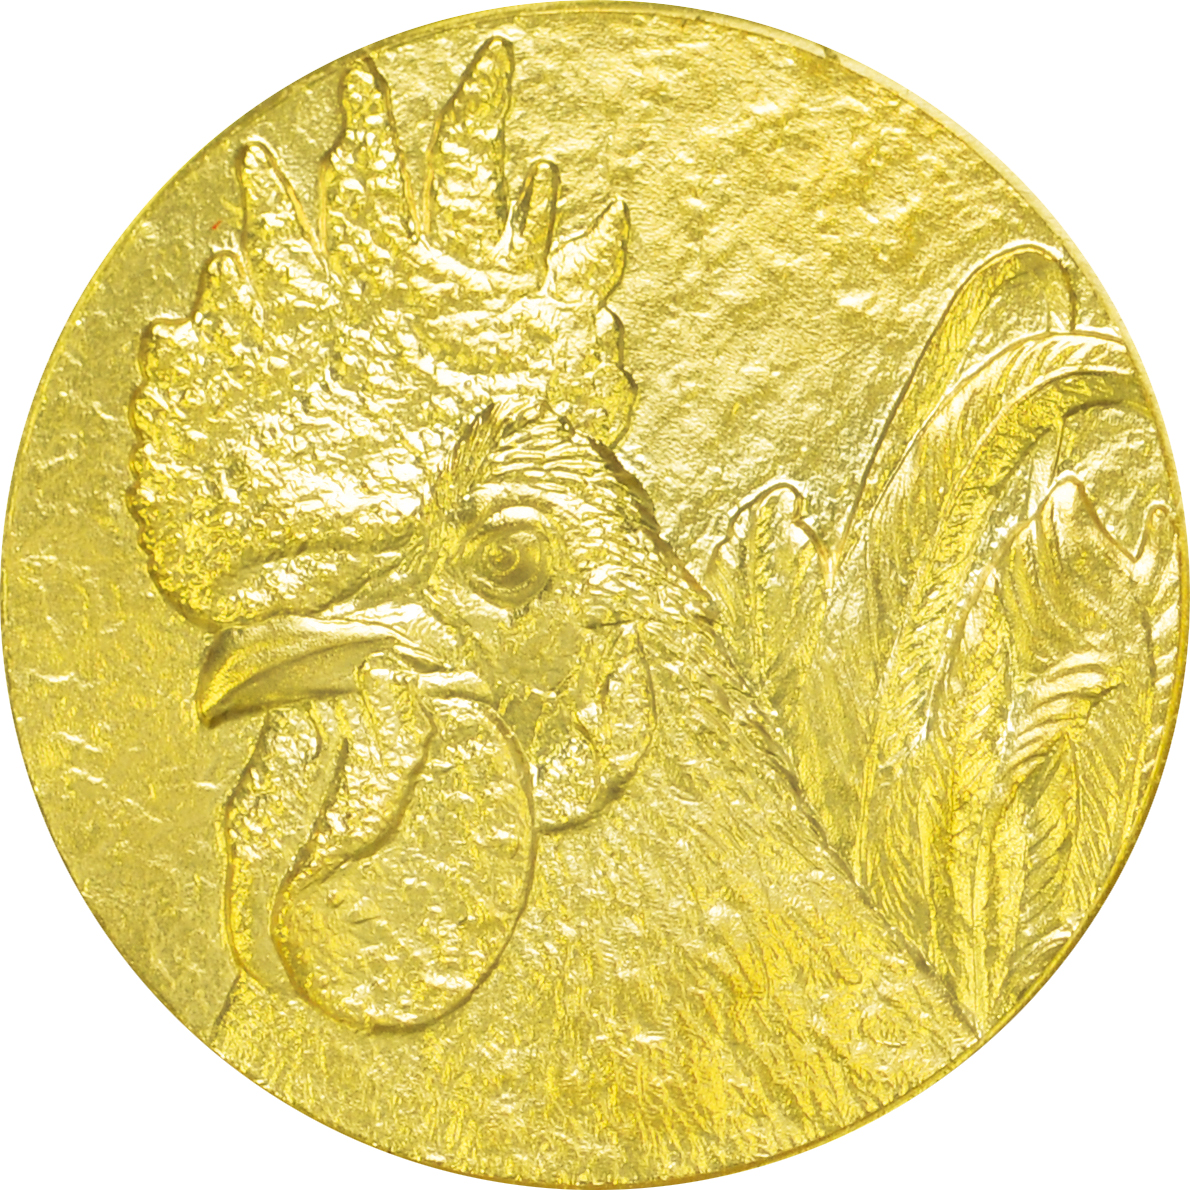 造幣局 純金 干支メダル 酉 及び純金 干支十二稜メダル 酉 の販売について 16年11月21日